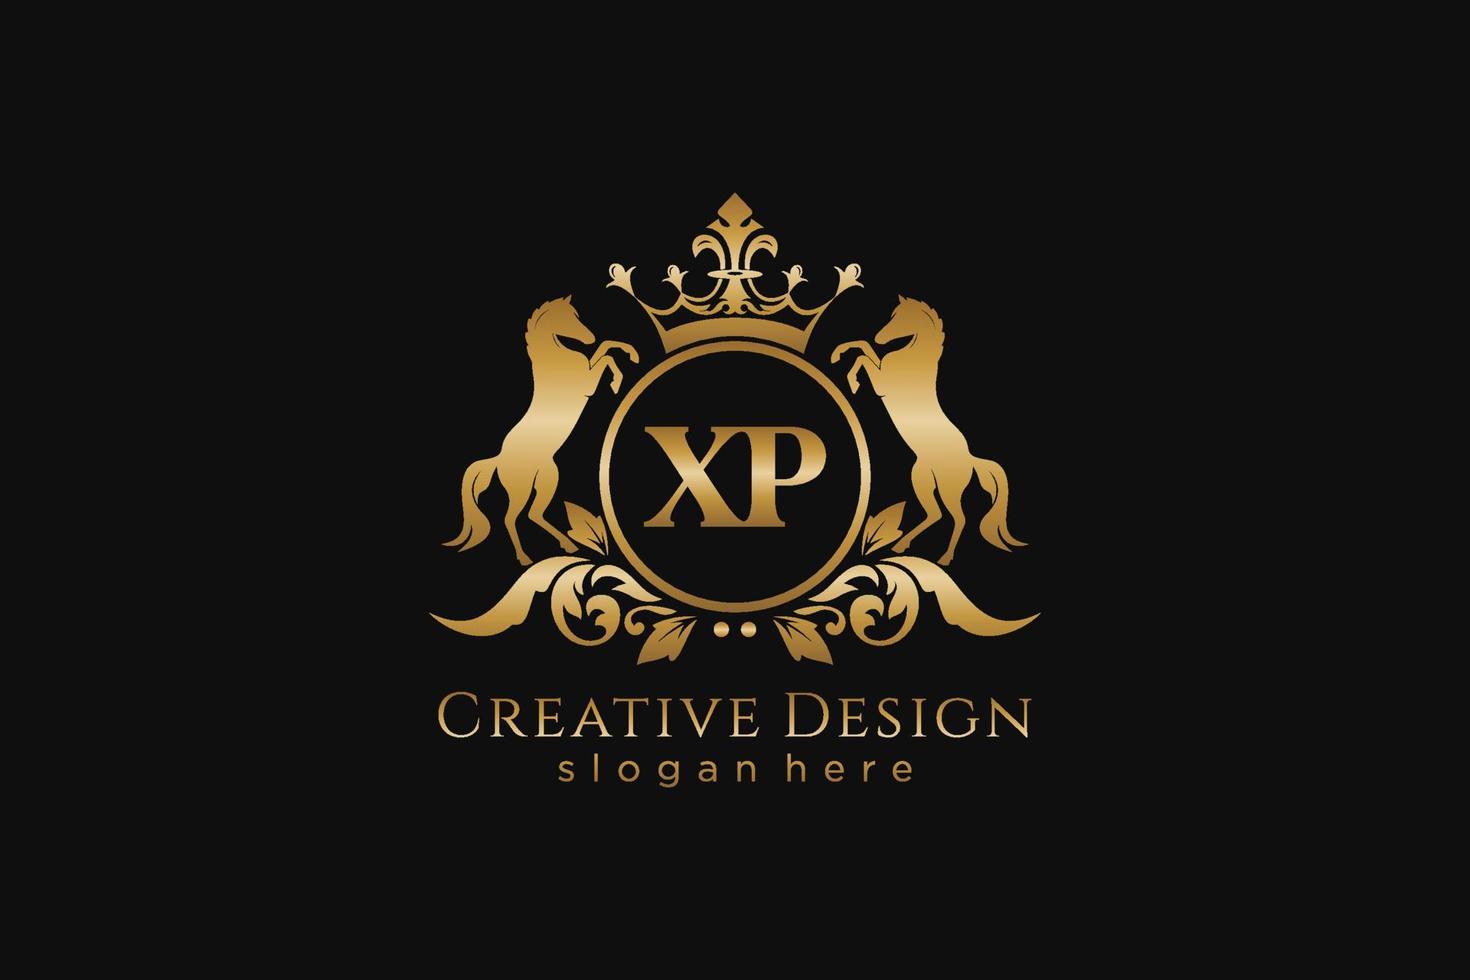 cresta dorada retro xp inicial con círculo y dos caballos, plantilla de insignia con pergaminos y corona real - perfecto para proyectos de marca de lujo vector